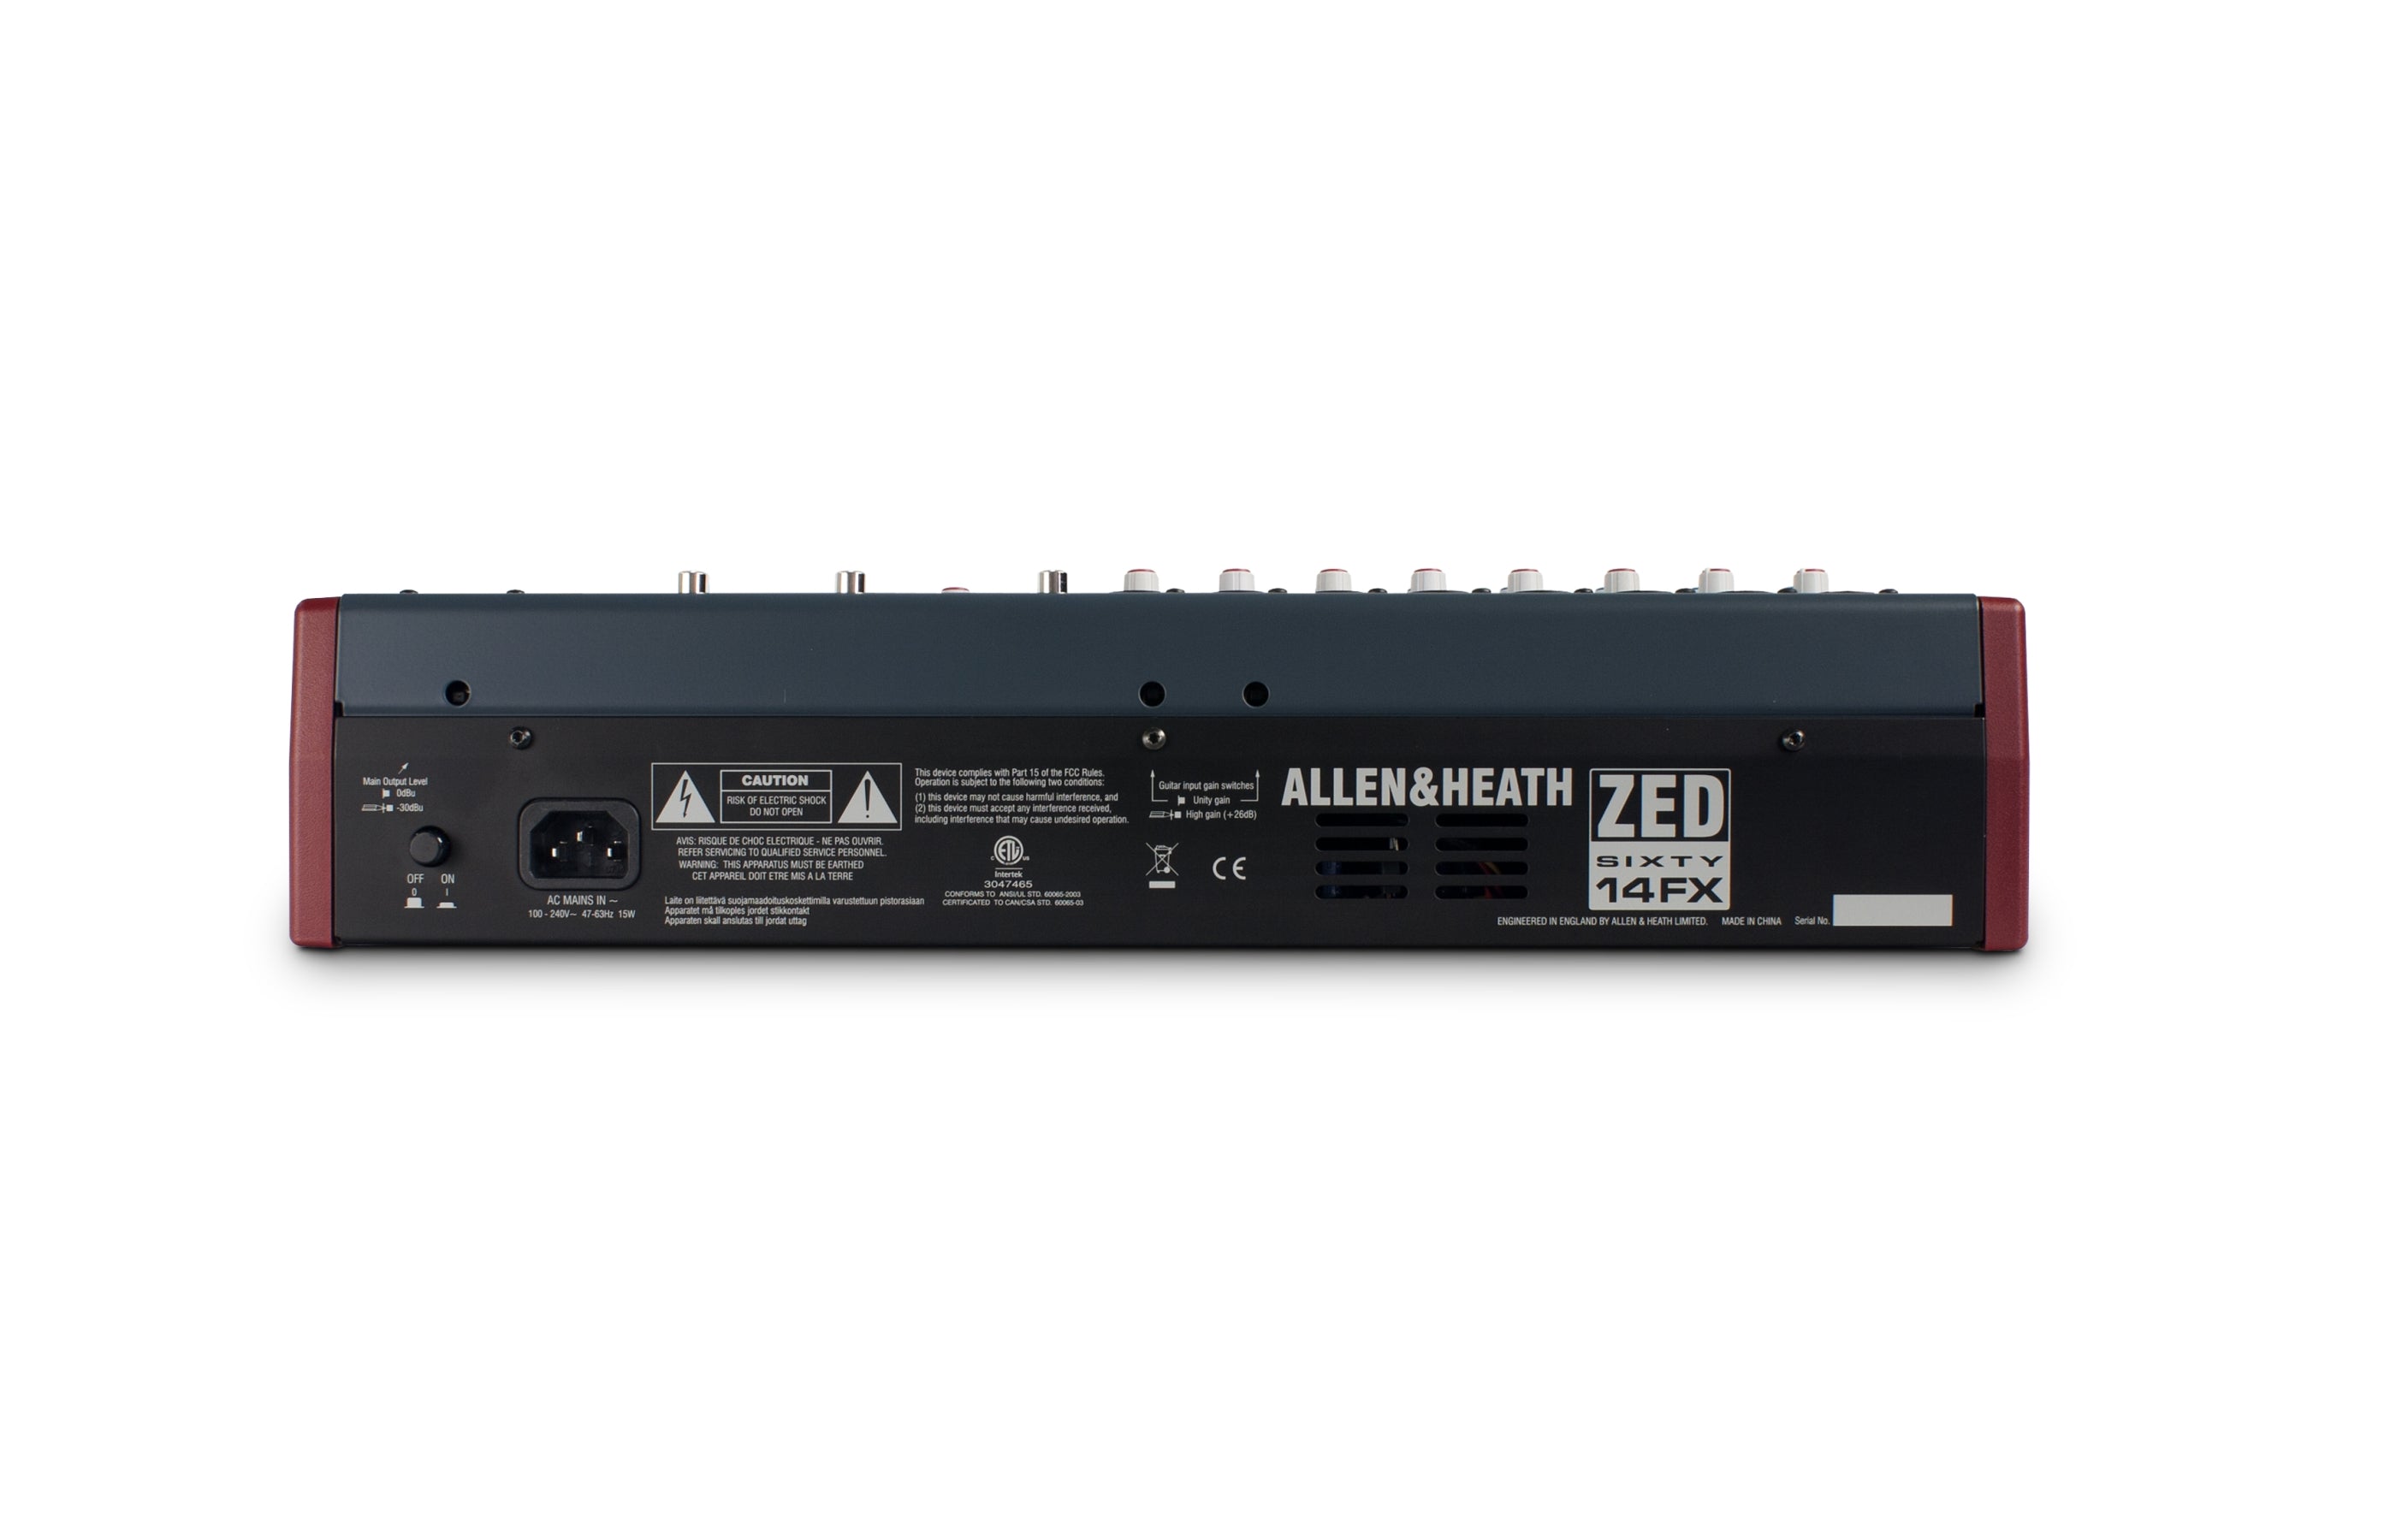 HALLEN & HEATH ZED60-14FXmezclador de 10 canales con 16 efectos digitales y puerto USB 6 entradas de micrófono/línea2 entradas Mic/Hi-Z con EQ de 3